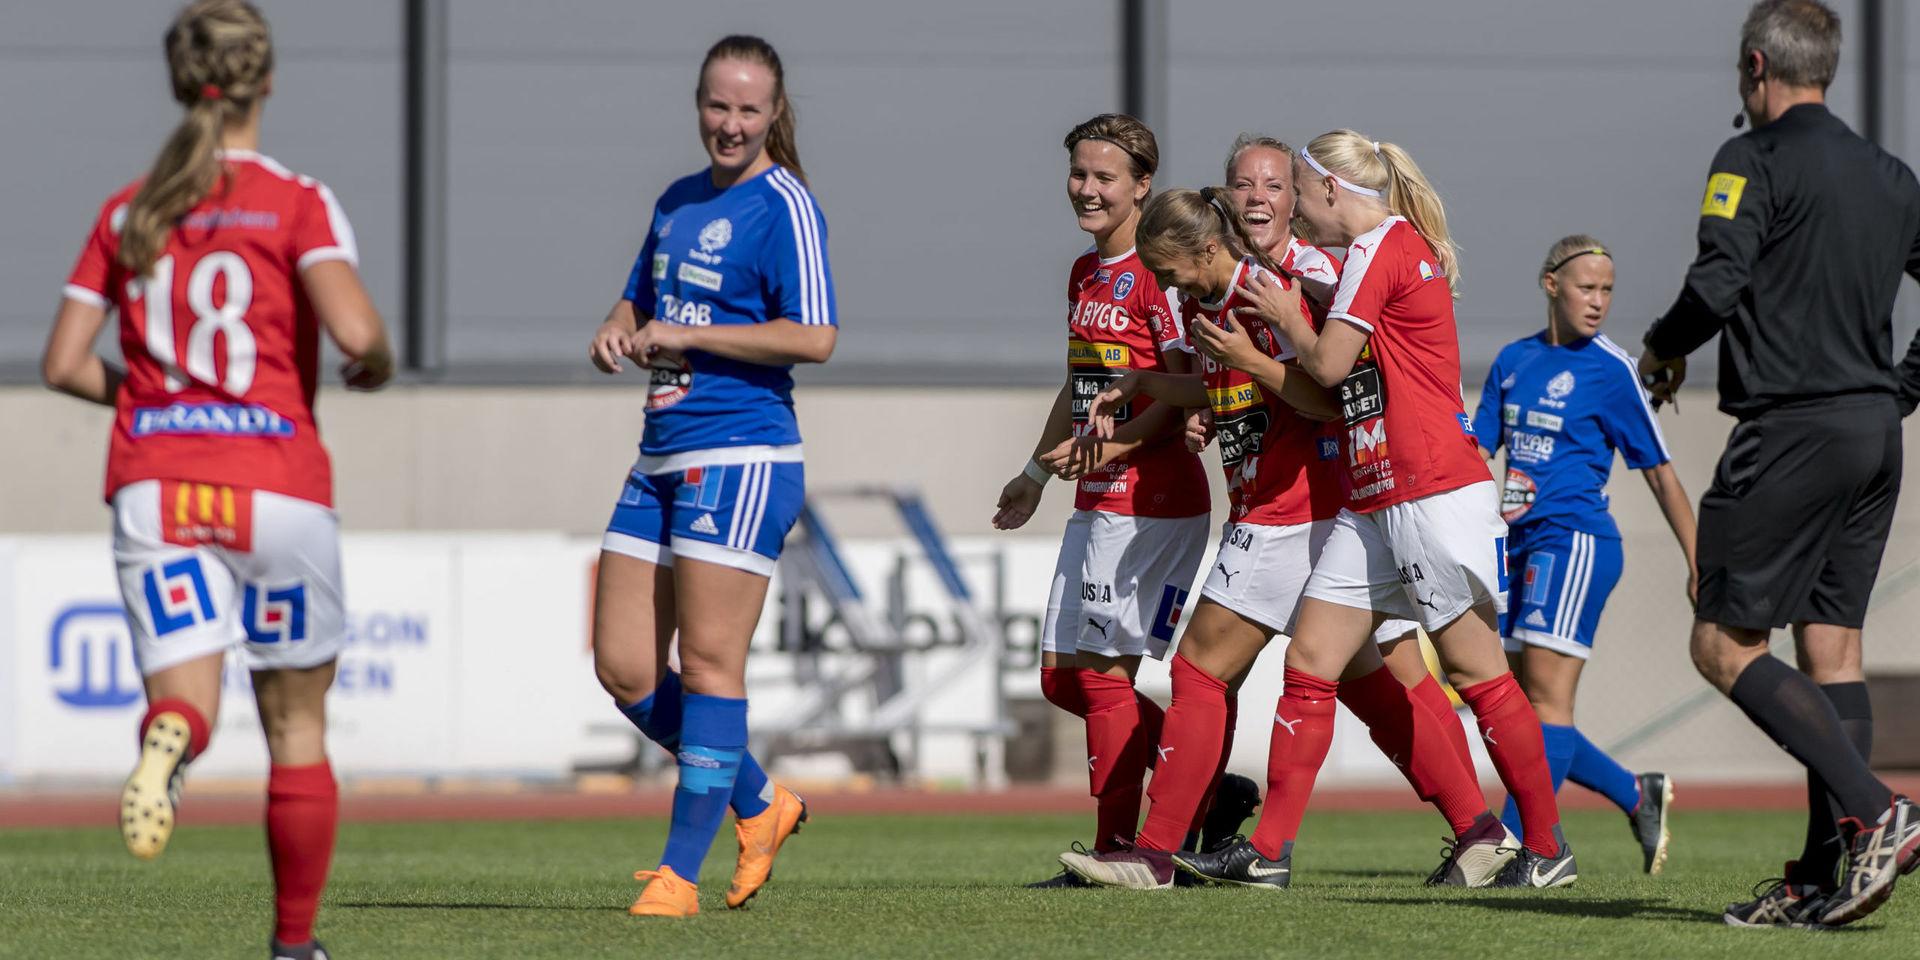 Förra säsongen gjorde Anna Holmqvist (till vänster) tio mål för Rössö och fram till sommaren var hon en av seriens bästa spelare i division 1 norra Götaland.